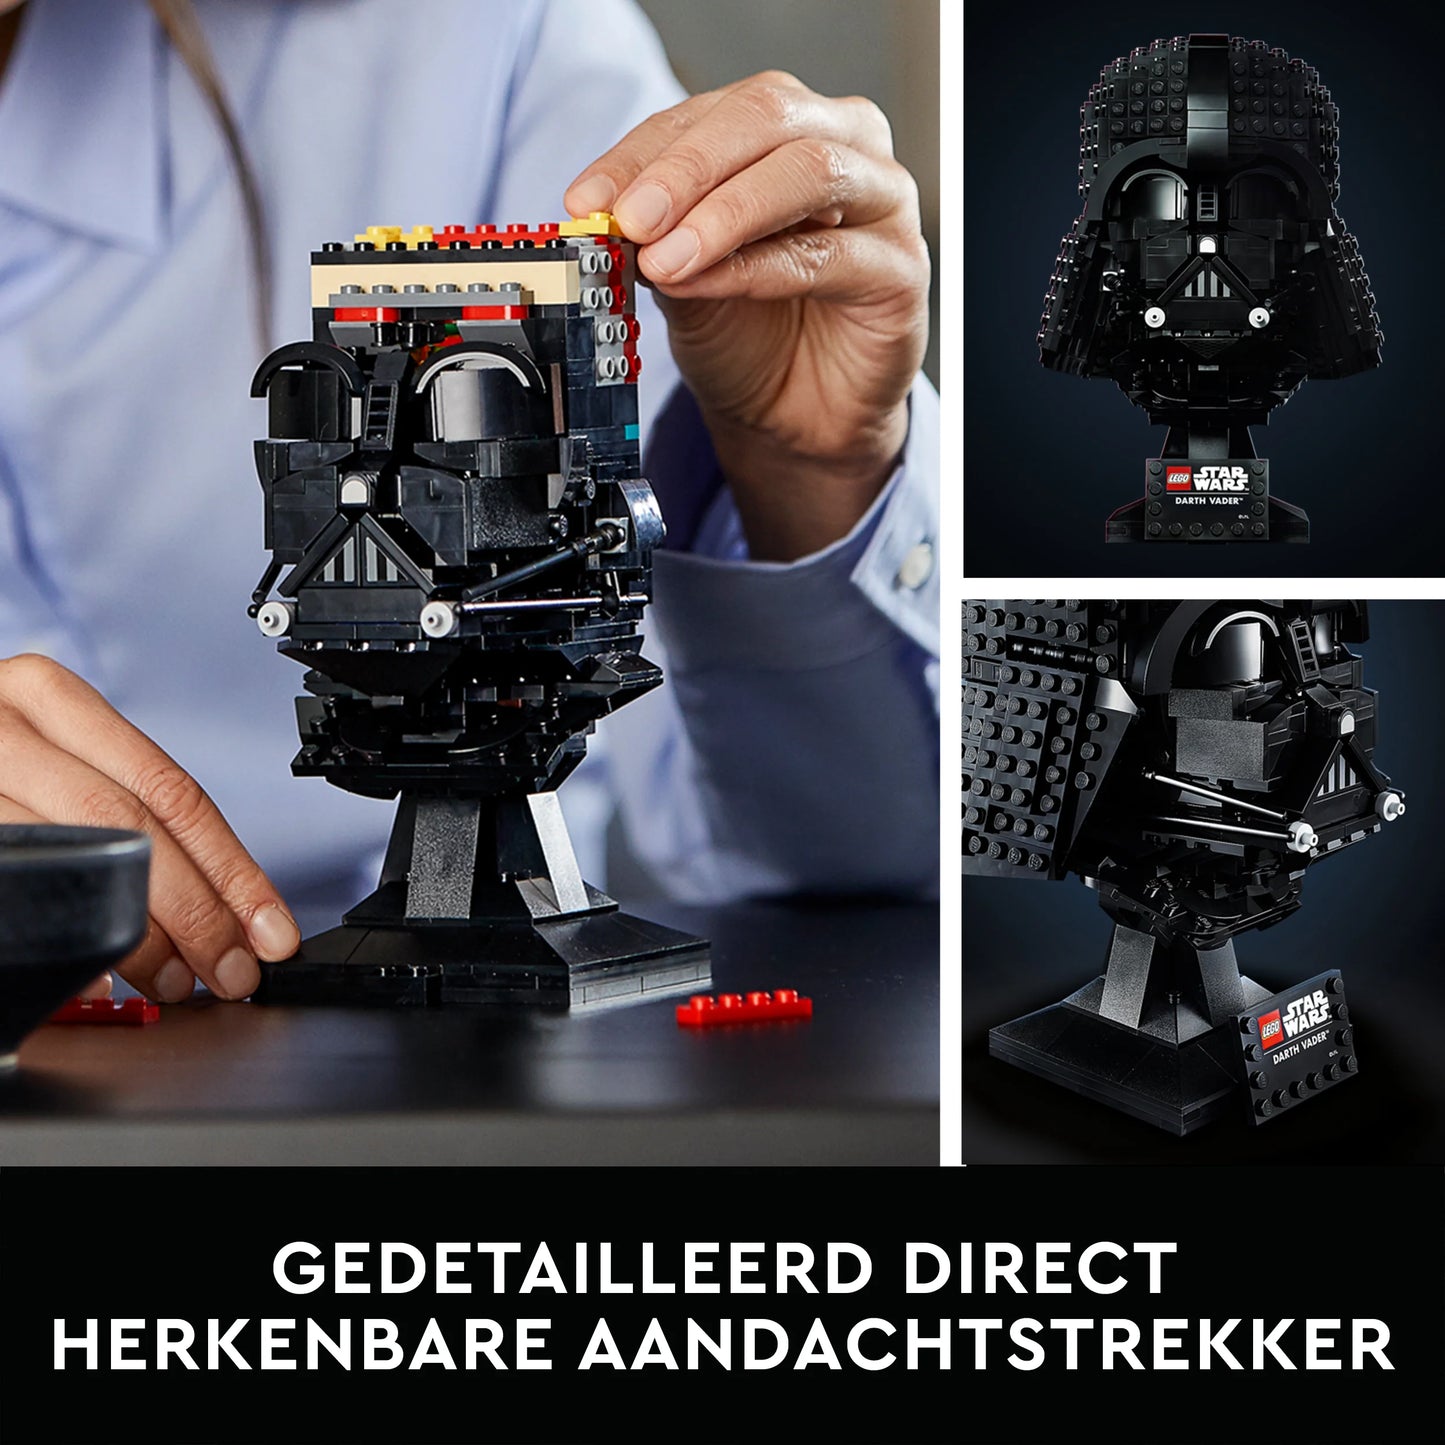 Darth Vader Helmet - LEGO Star Wars